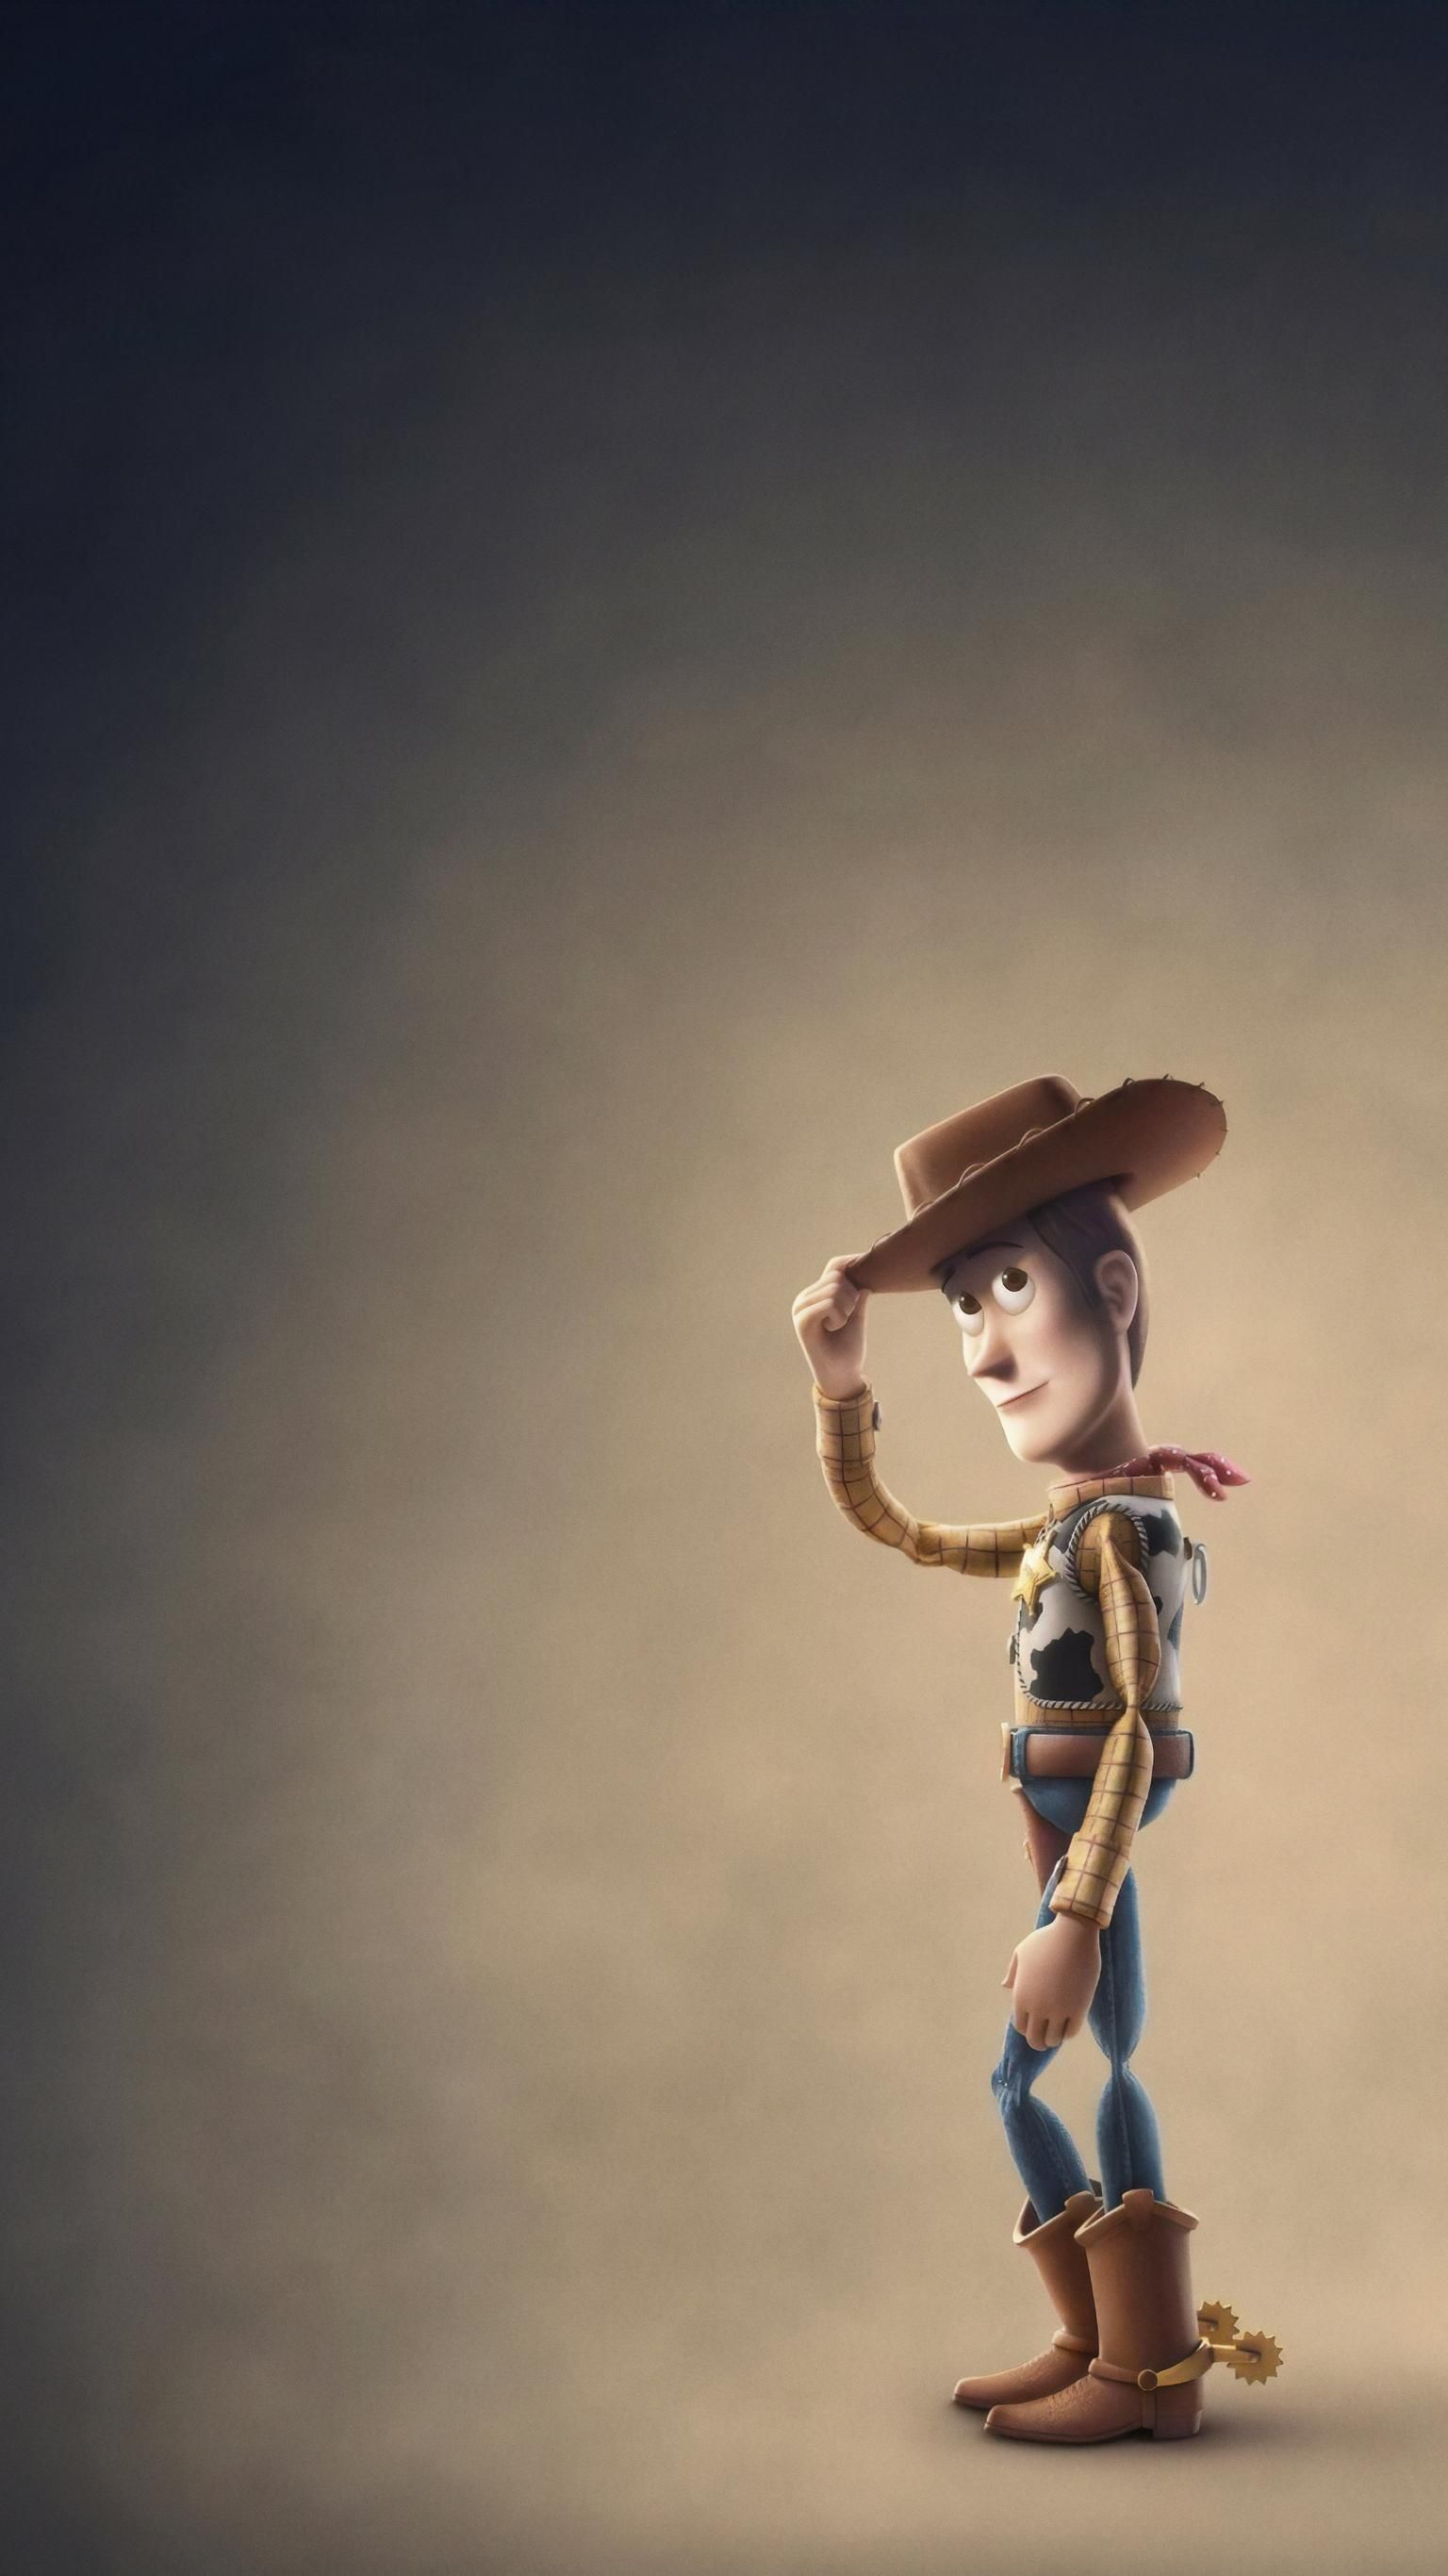 Toy Story 4 (2019) Fondo de pantalla del teléfono en 2019 | Fondos de pantalla del teléfono | Juguete